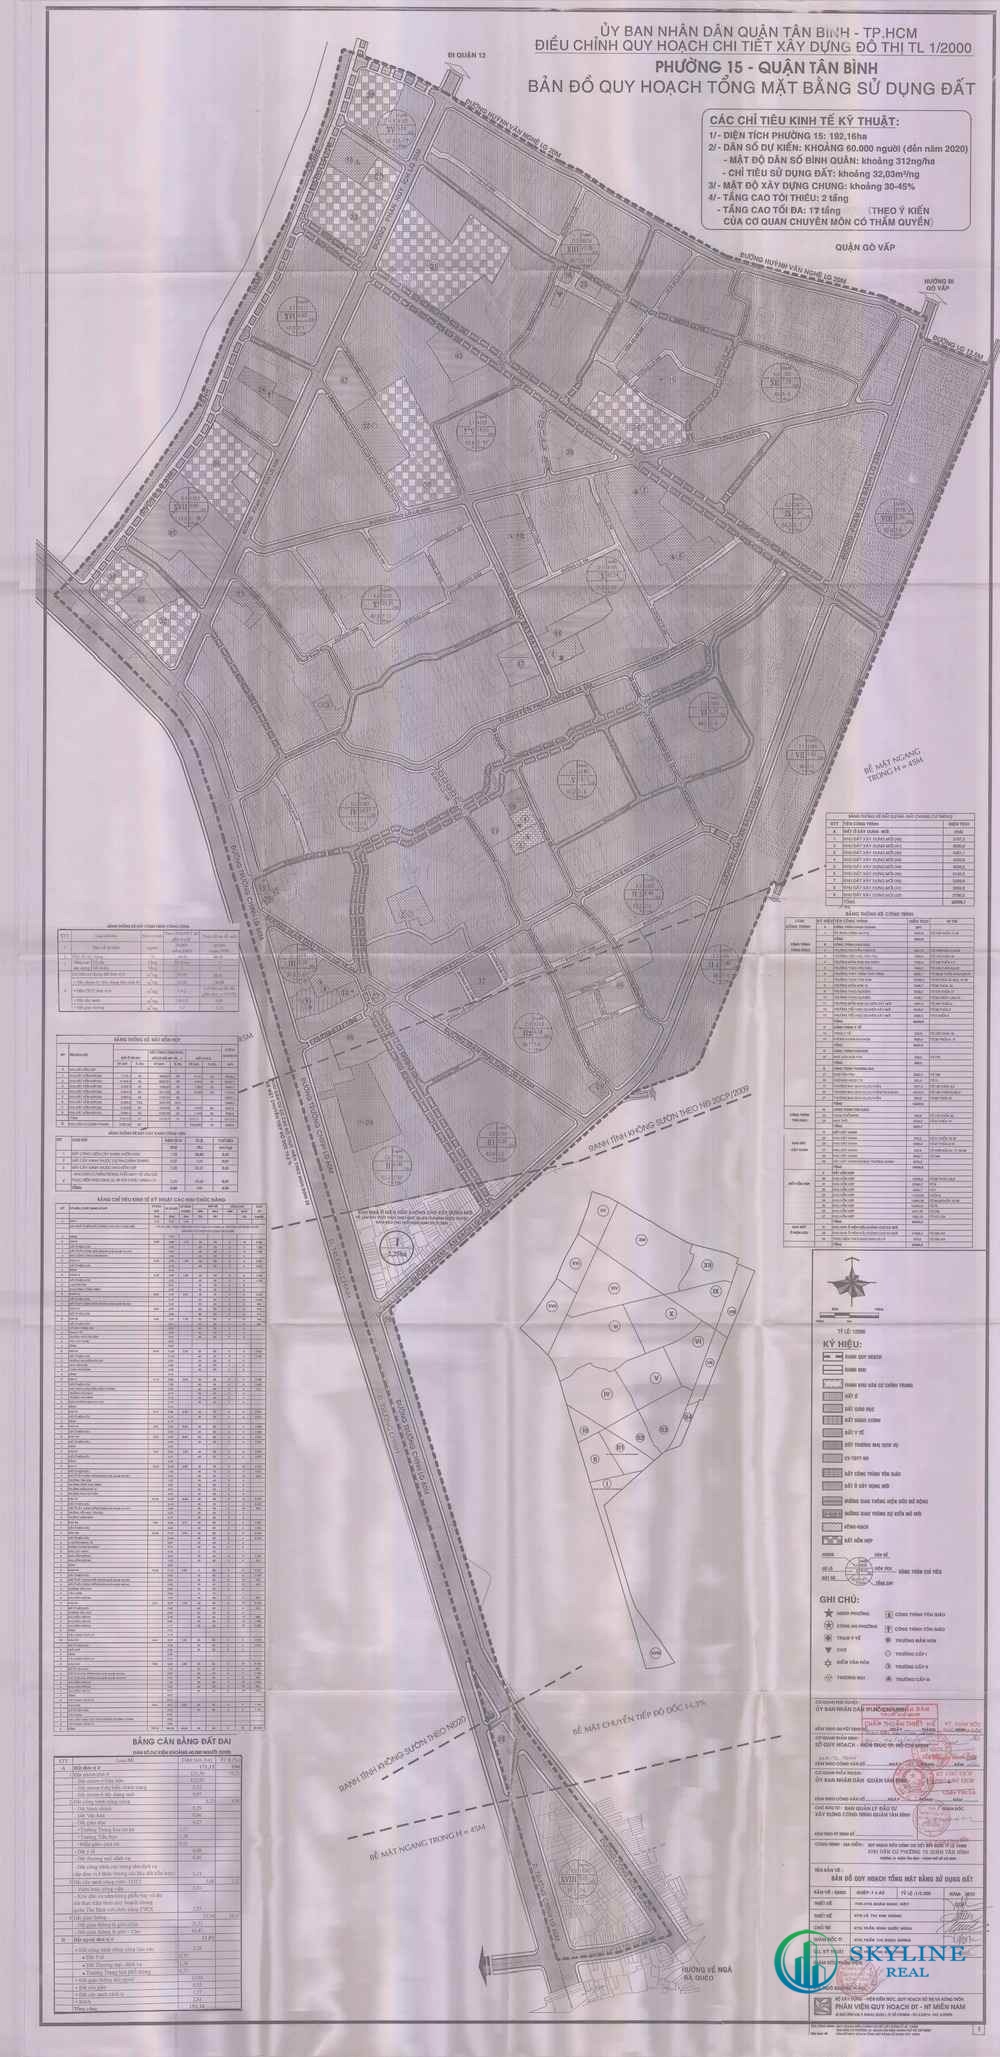 Bản đồ quy hoạch 1/2000 Phường 15 quận Tân Bình 